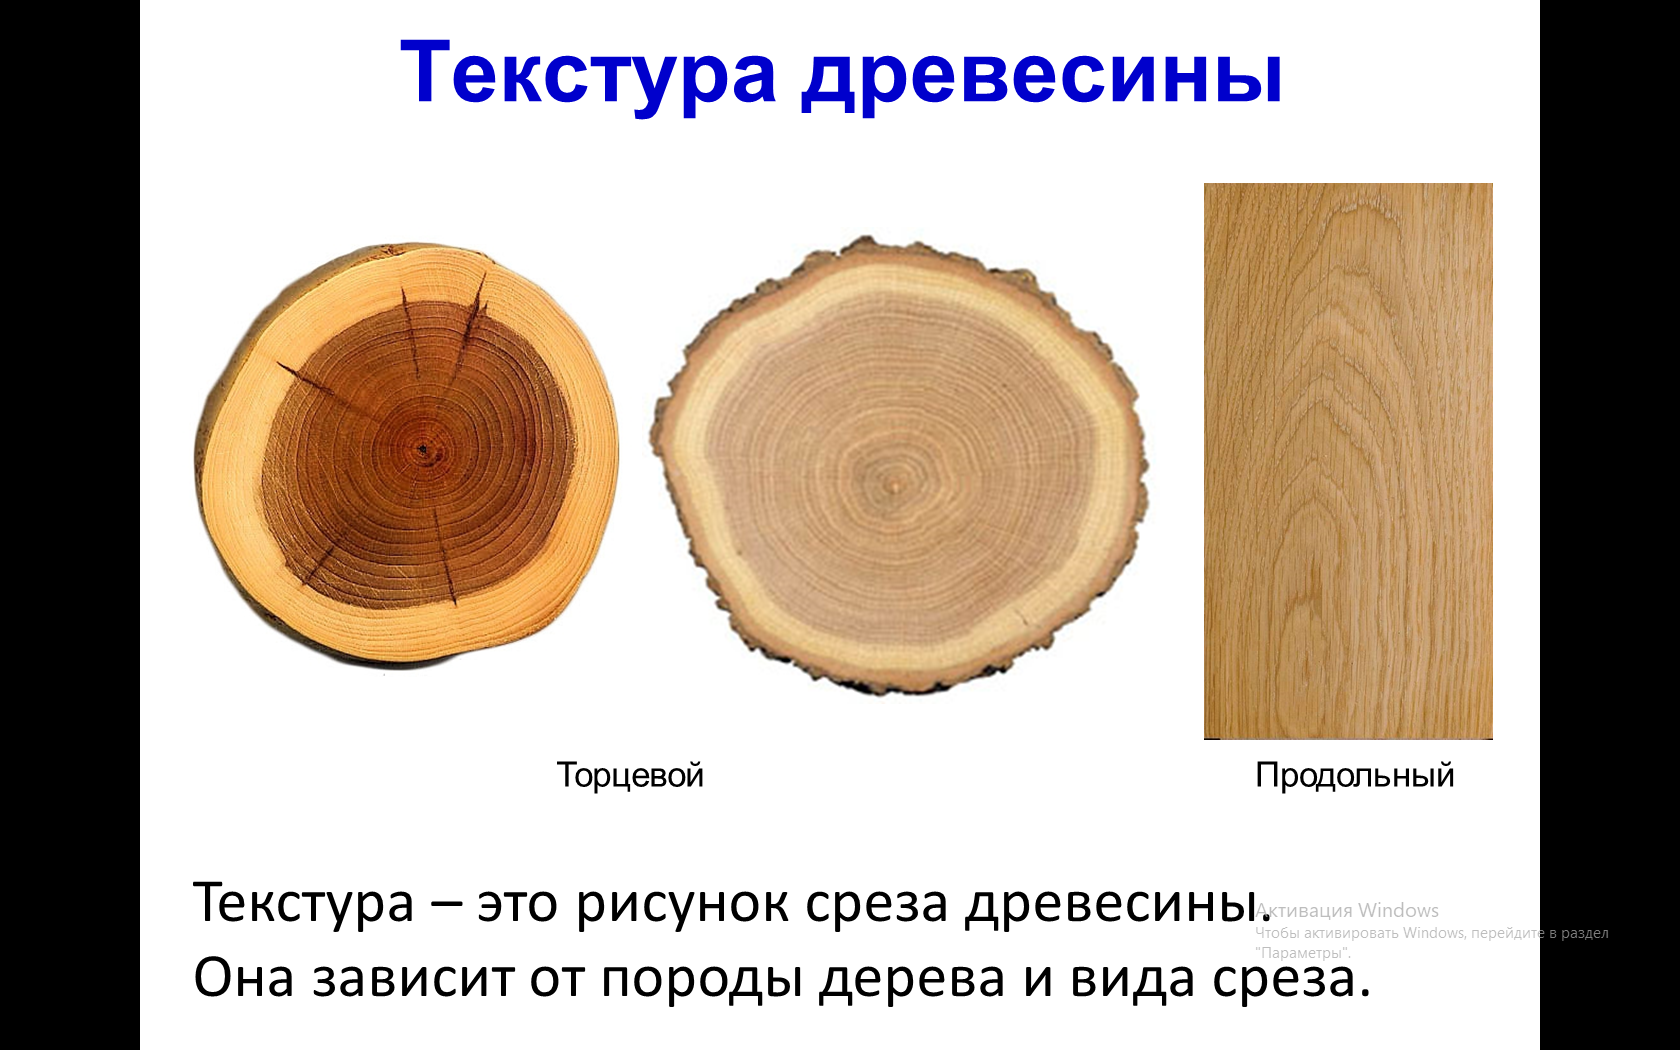 Какие бывают породы деревьев?